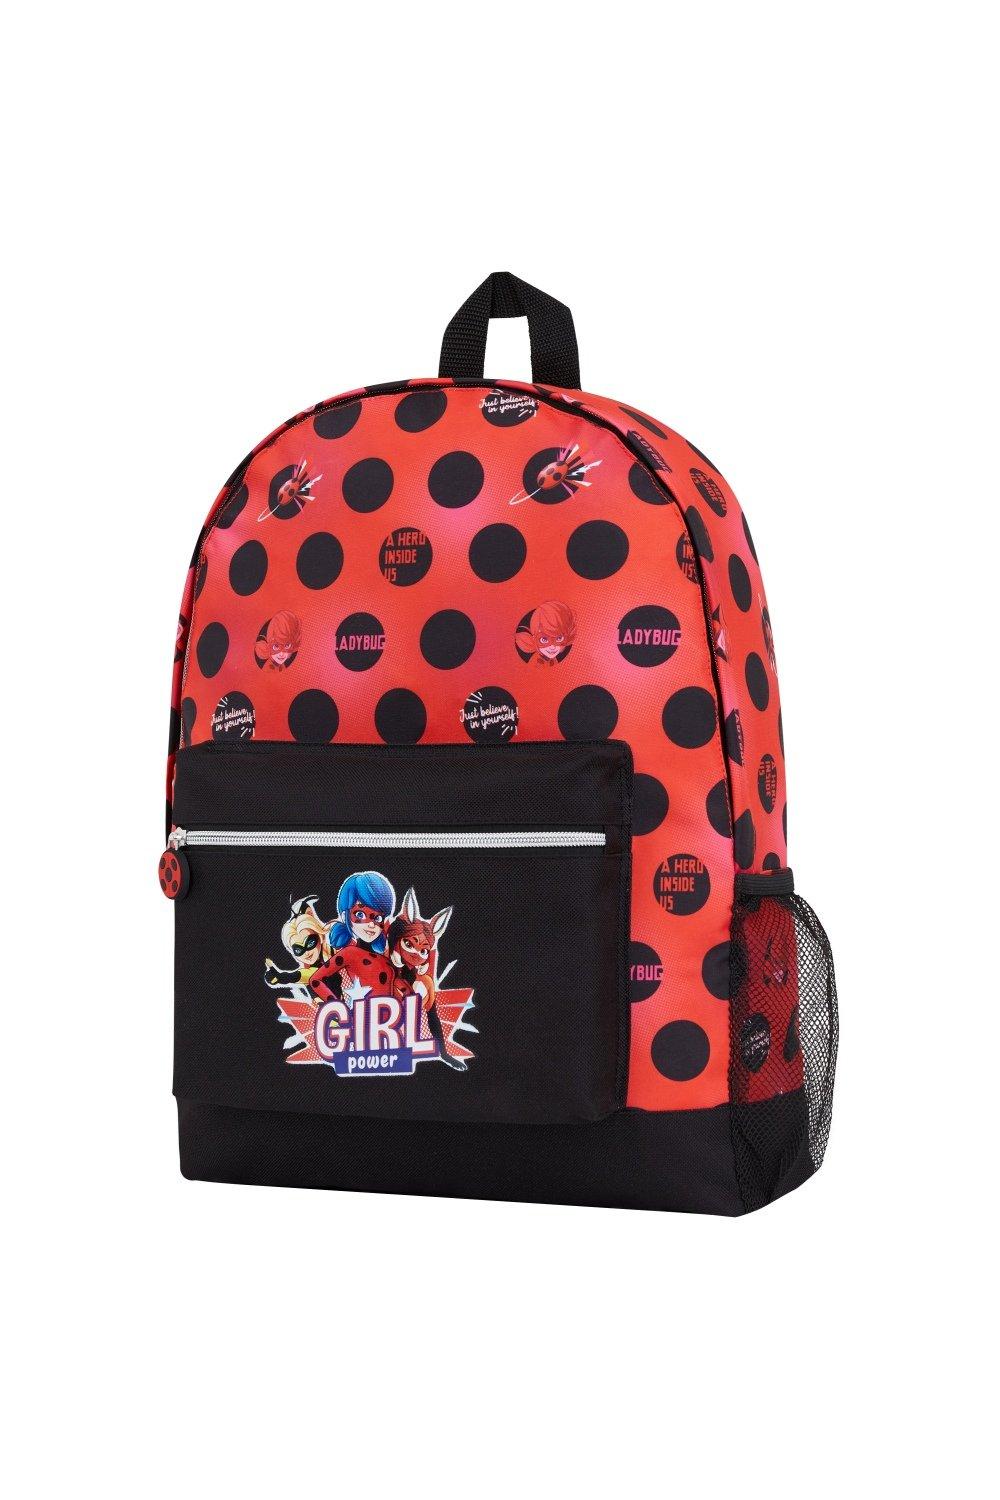 Рюкзак с божьей коровкой Miraculous Ladybug, мультиколор рюкзак для девочек с цветочным рисунком школьный рюкзак для девочек набор детских школьных сумок детский рюкзак школьный рюкзак